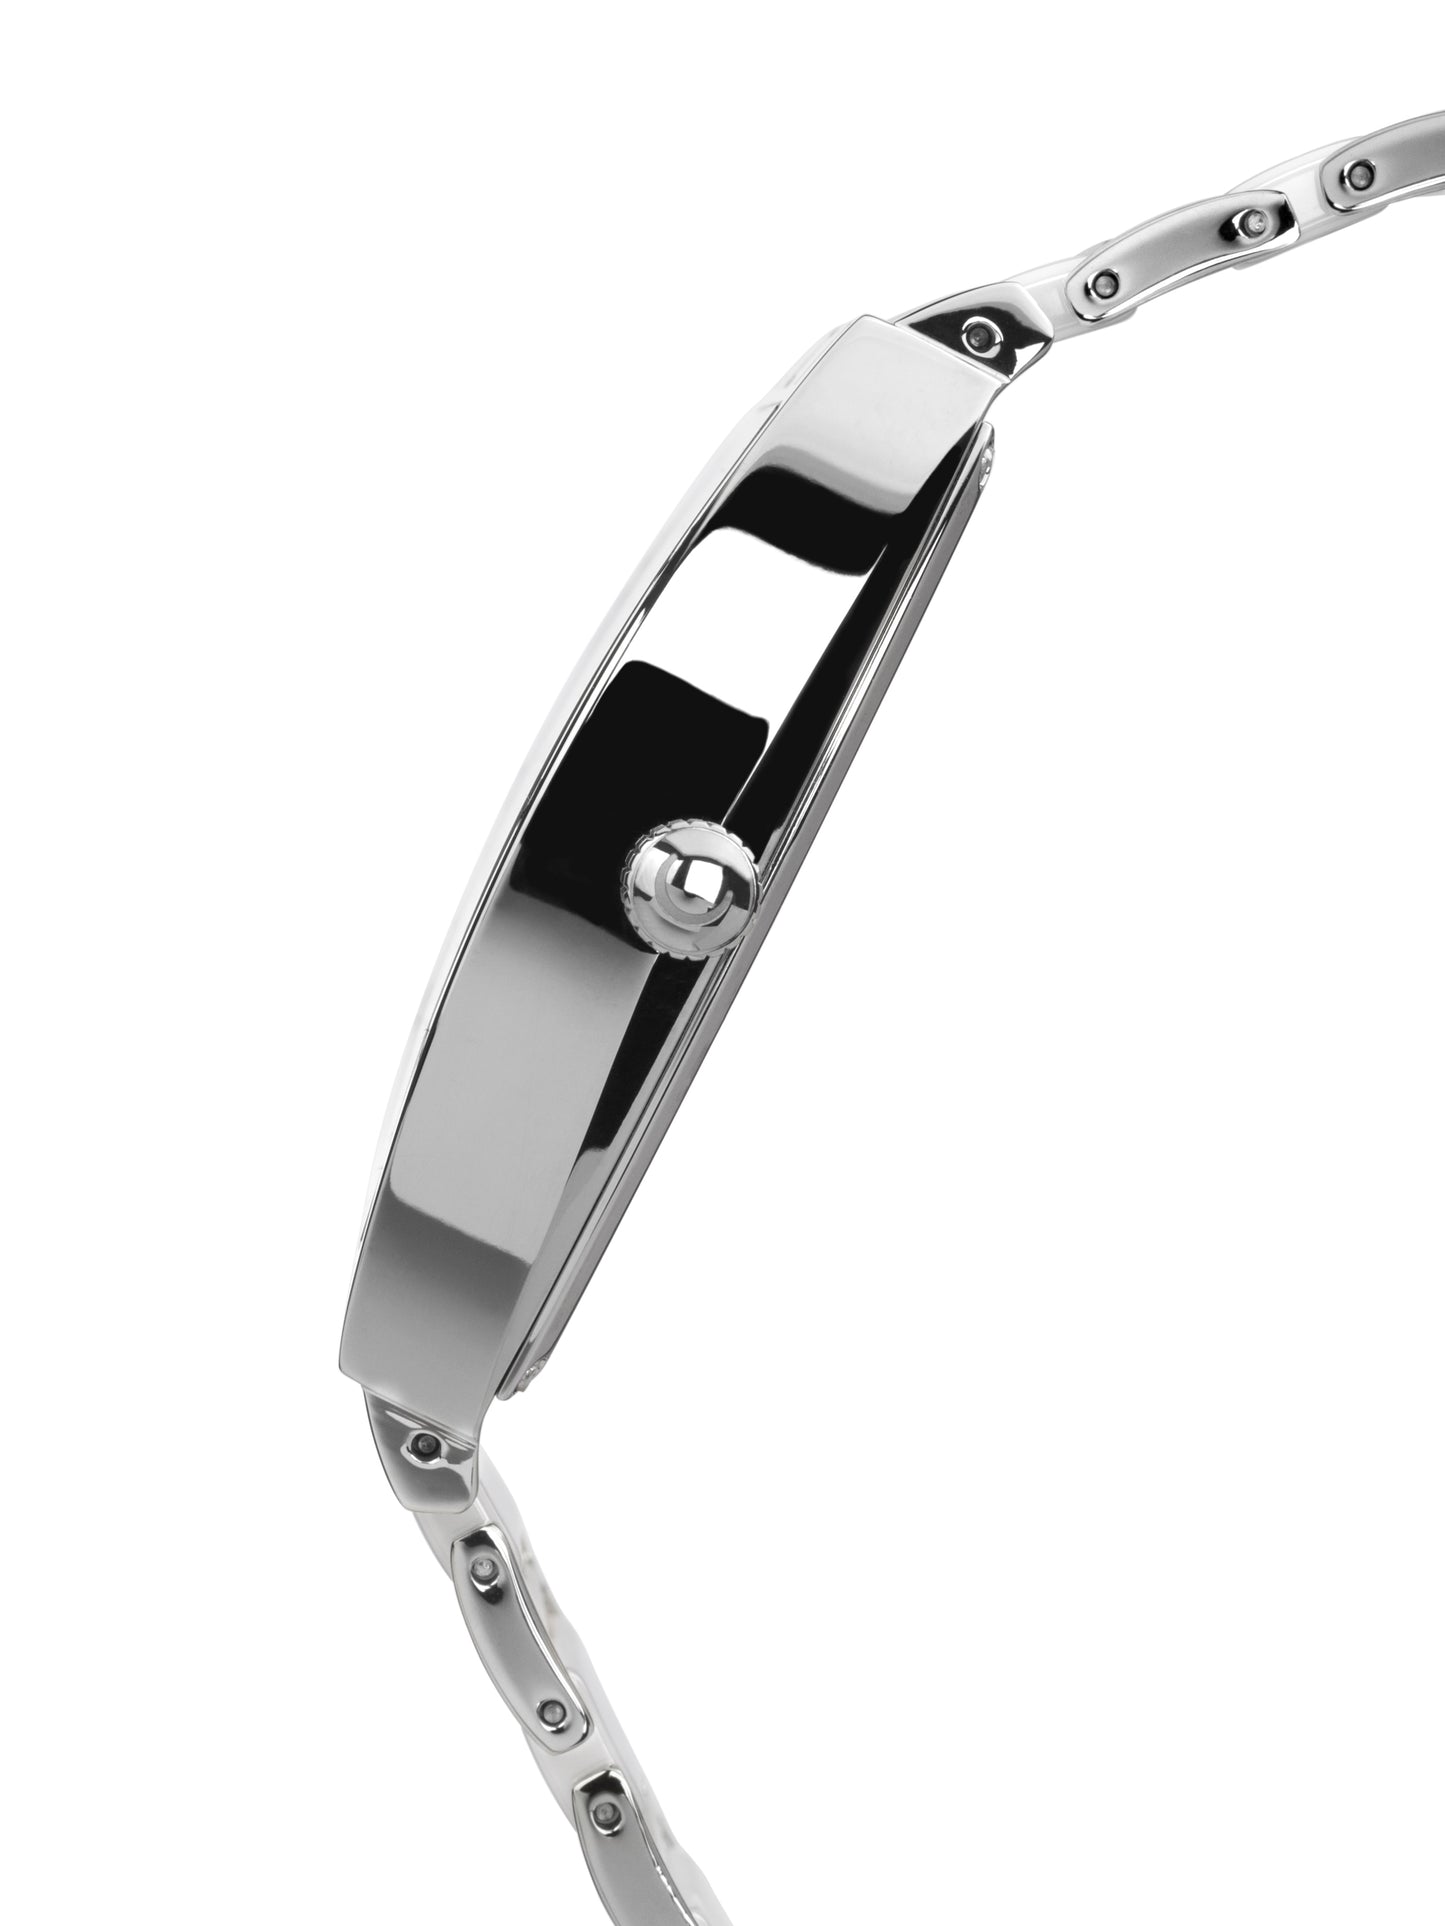 Automatic watches — Leandro — Chrono Diamond — steel ceramic white